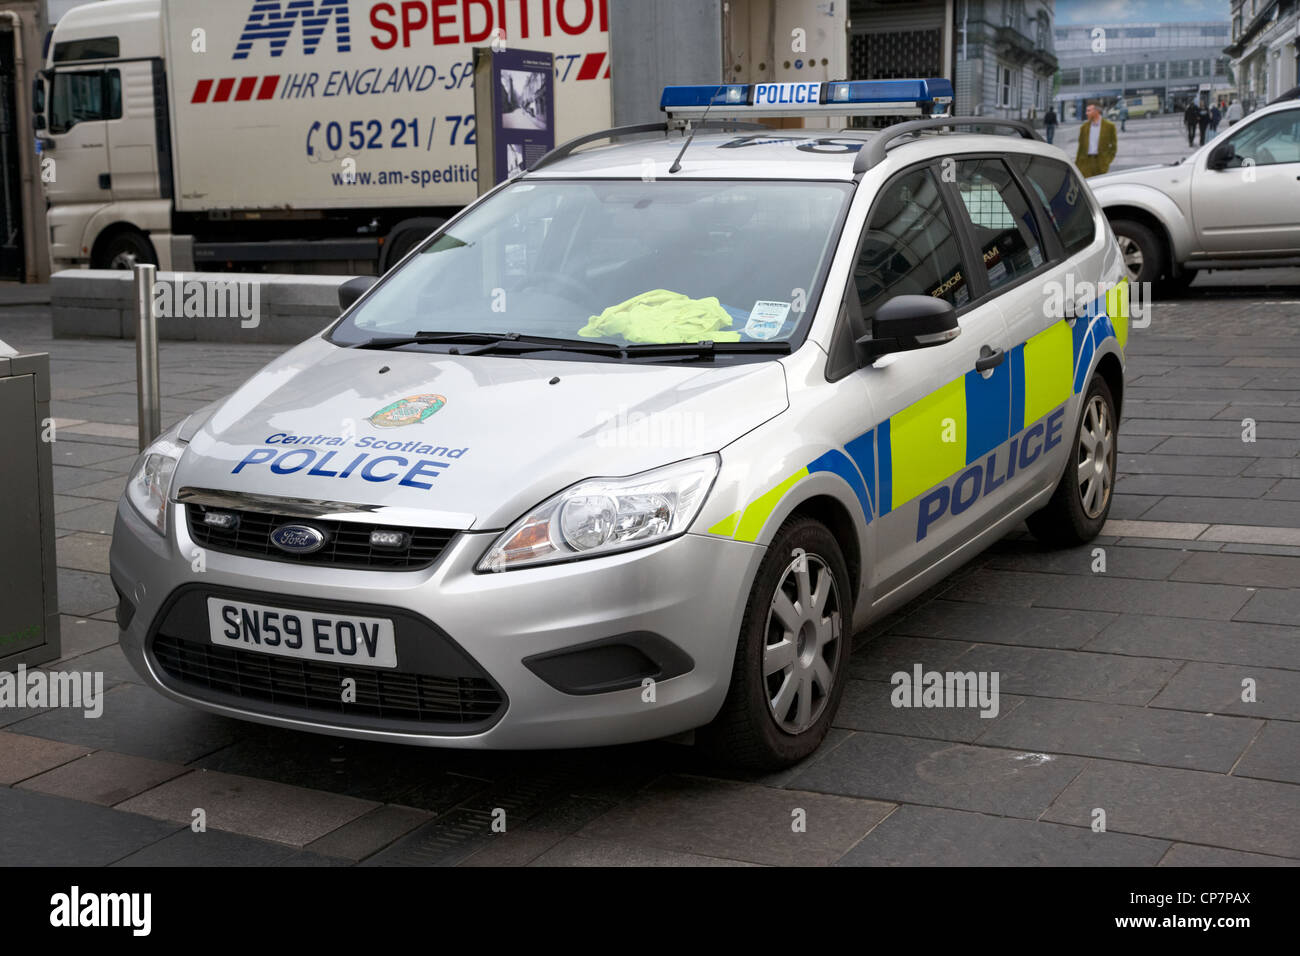 Scozia centrale forza di polizia pattuglia di Stirling Scozia Scotland Regno Unito Foto Stock